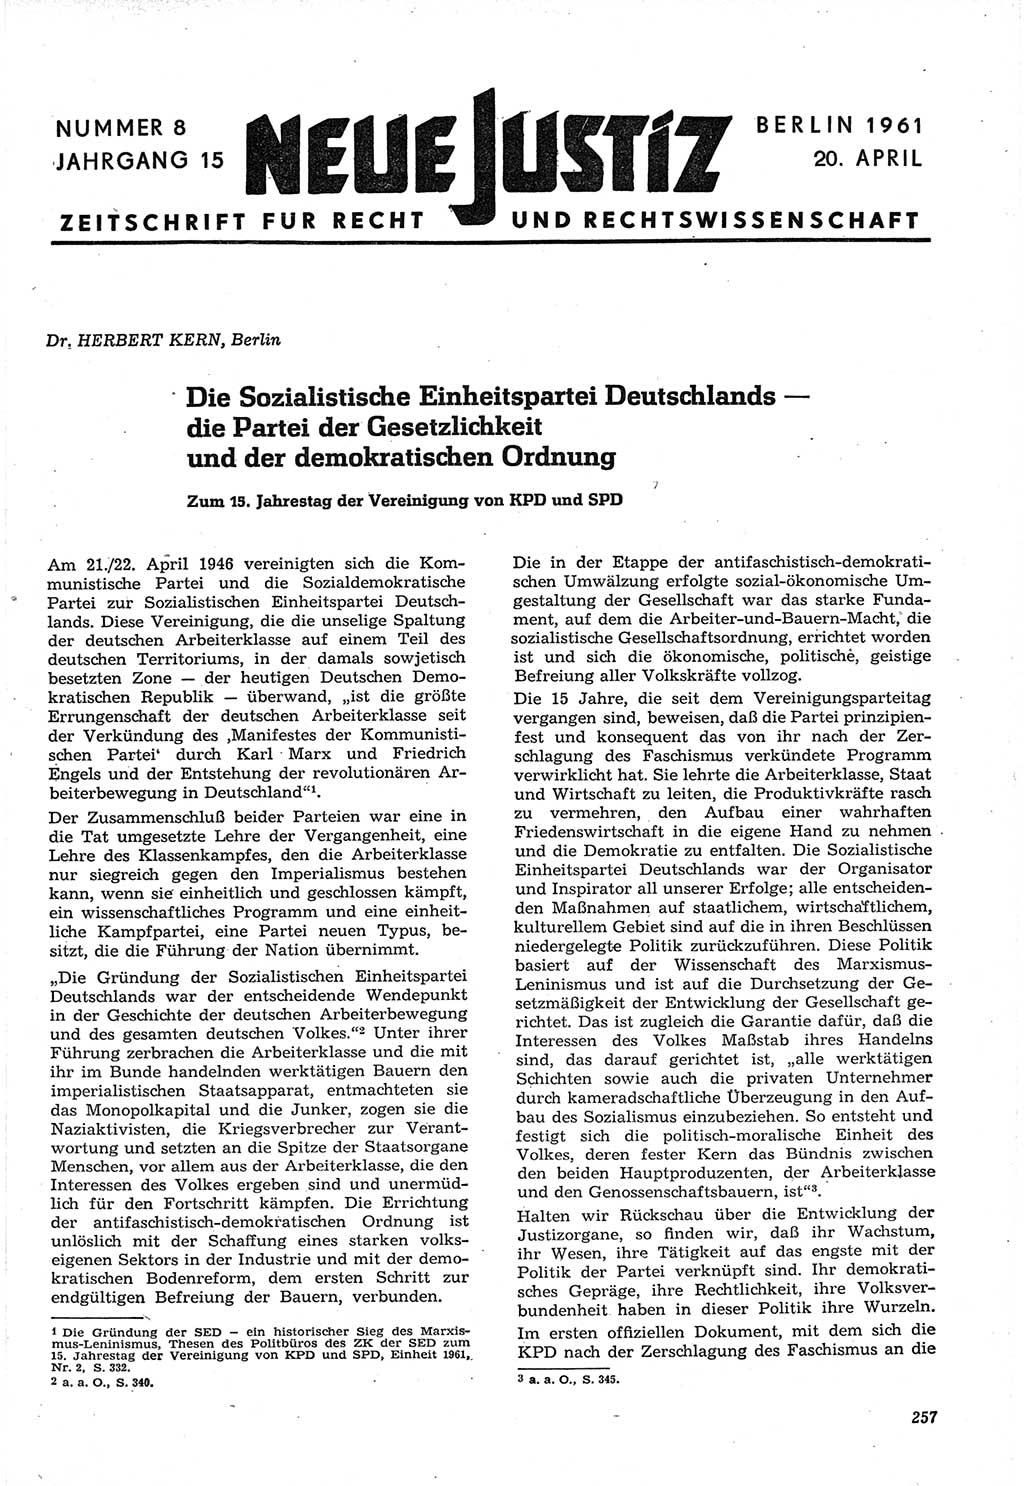 Neue Justiz (NJ), Zeitschrift für Recht und Rechtswissenschaft [Deutsche Demokratische Republik (DDR)], 15. Jahrgang 1961, Seite 257 (NJ DDR 1961, S. 257)